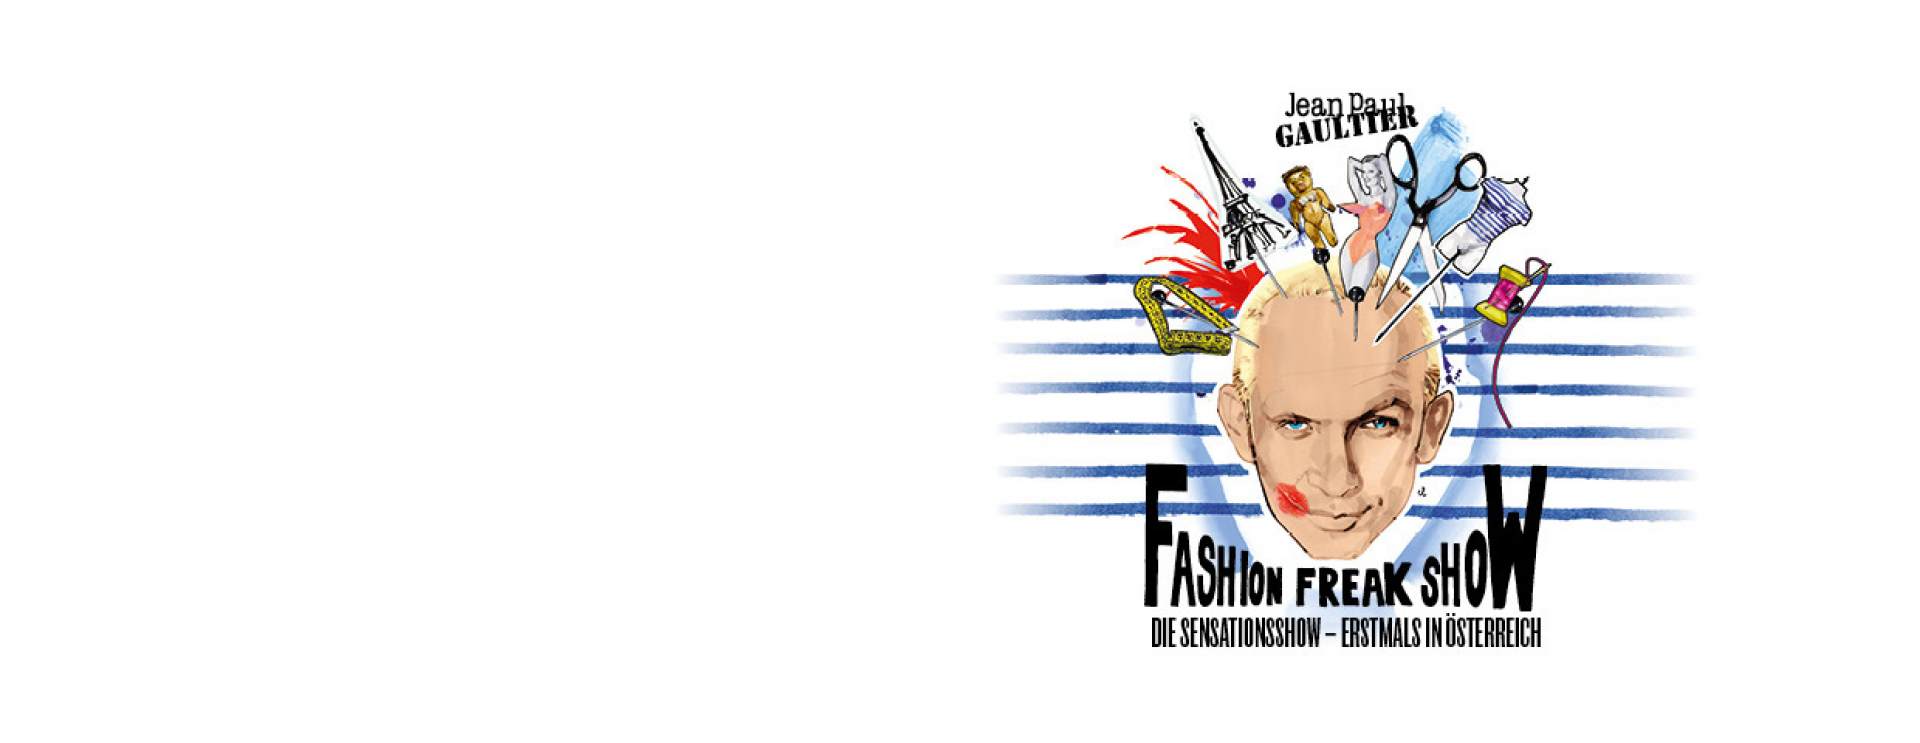 Jean Paul Gaultier-Fashion Freak Show 